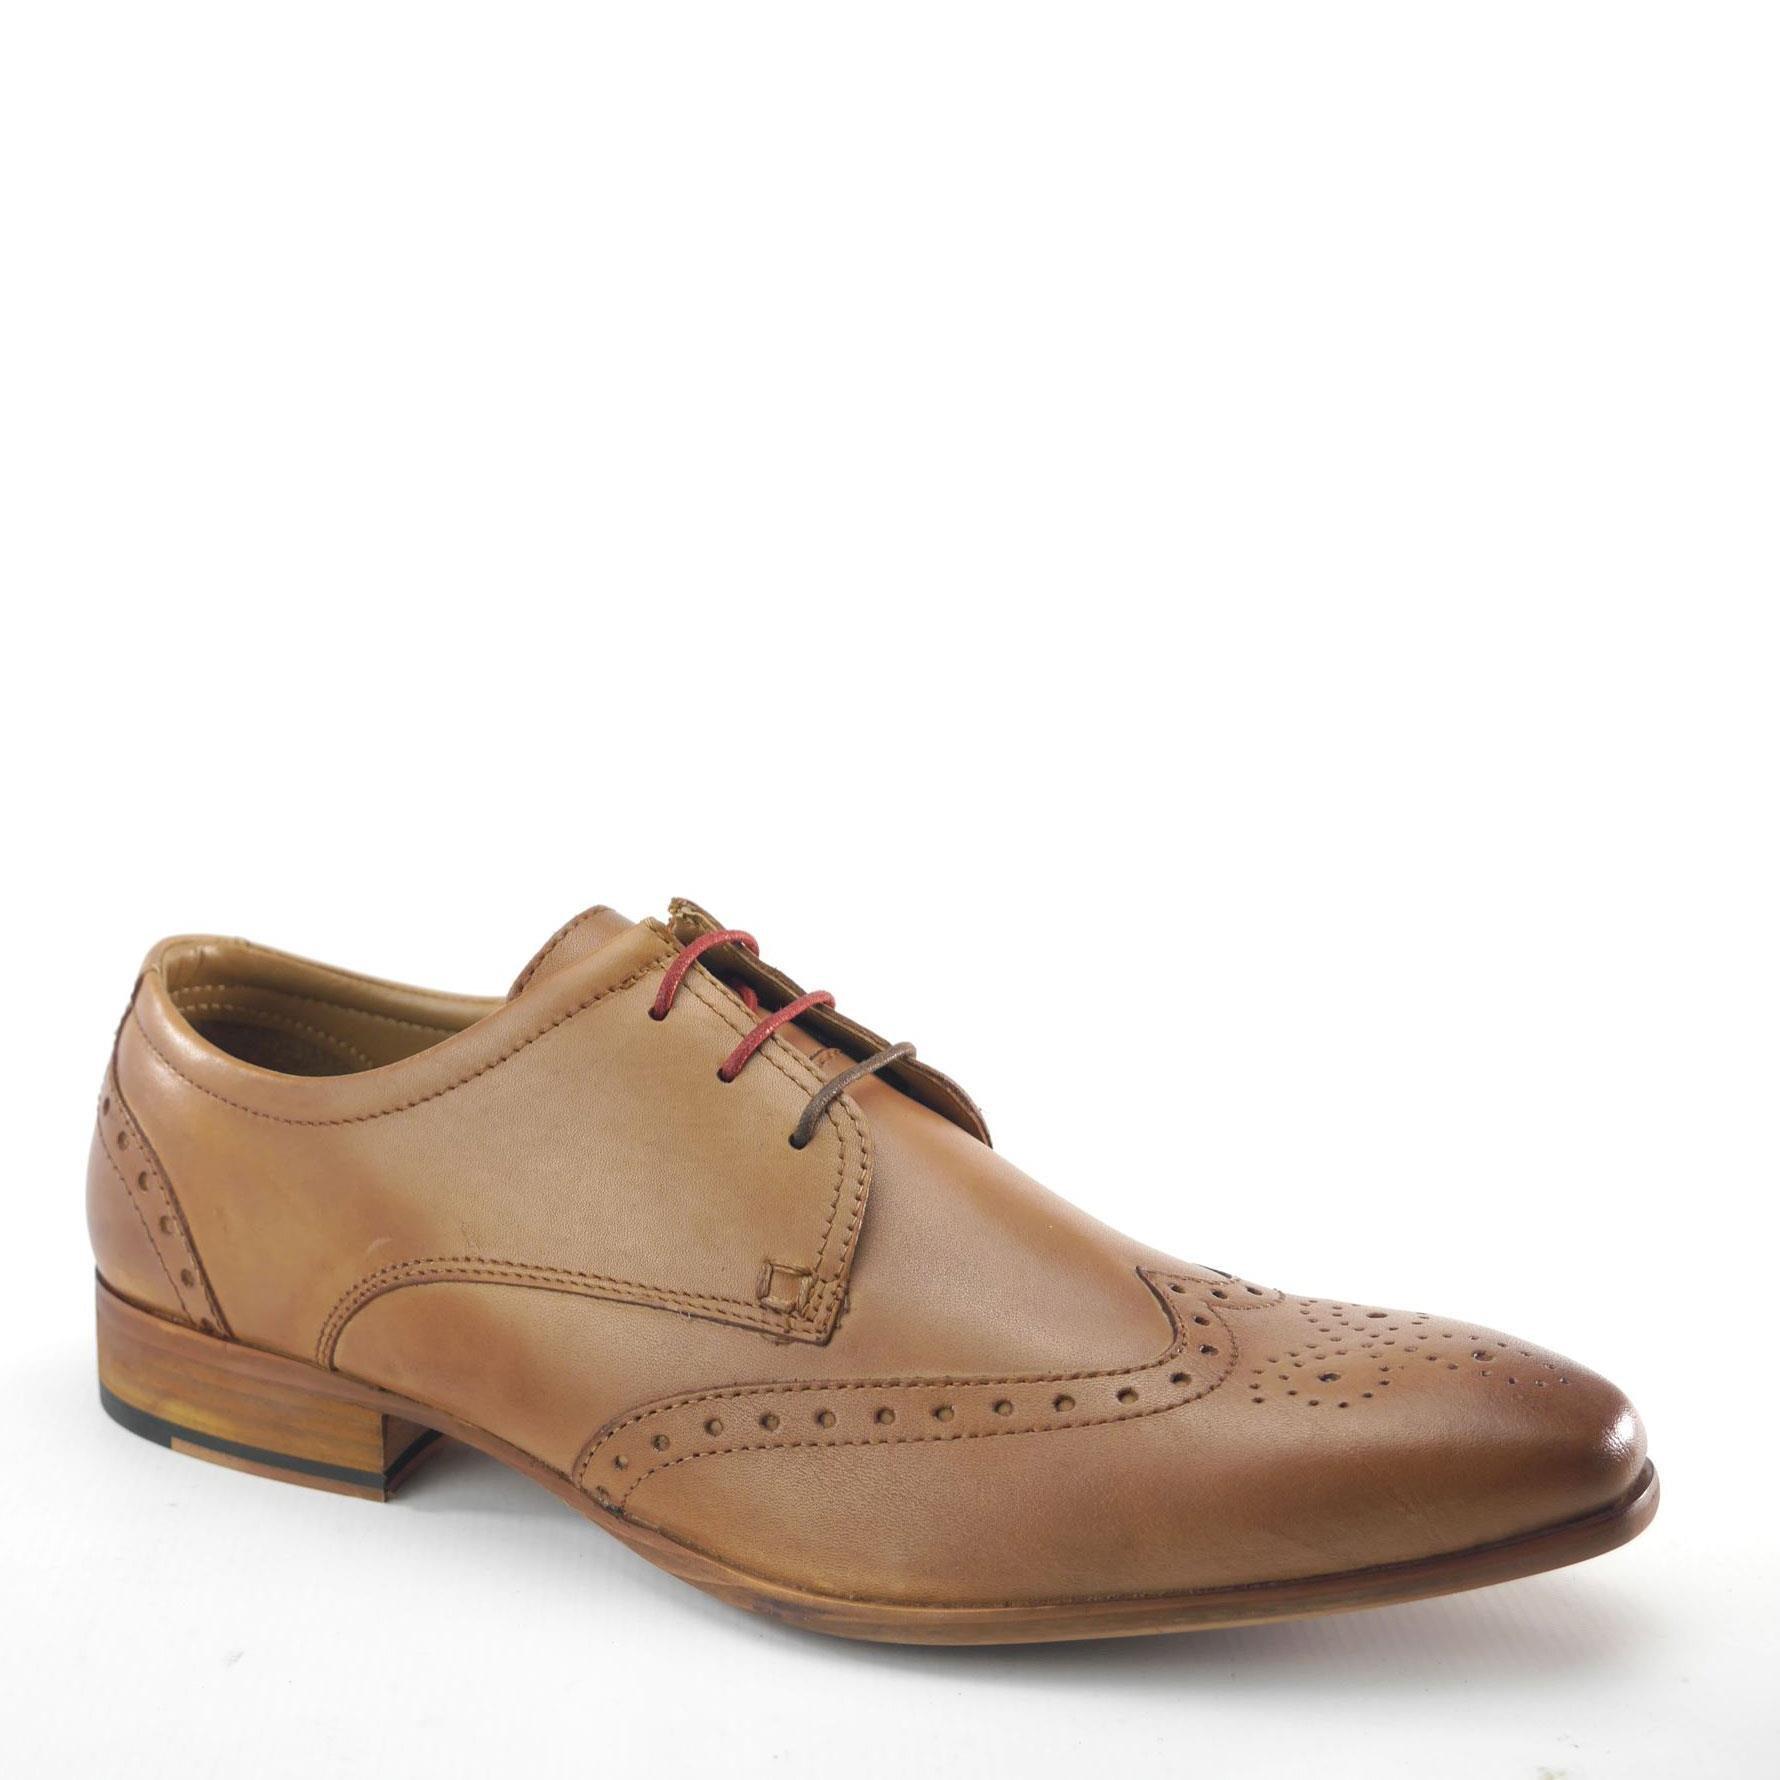 Кожаные туфли-броги Clapham Frank James, коричневый кожаные туфли дерби броги parade frank james коричневый